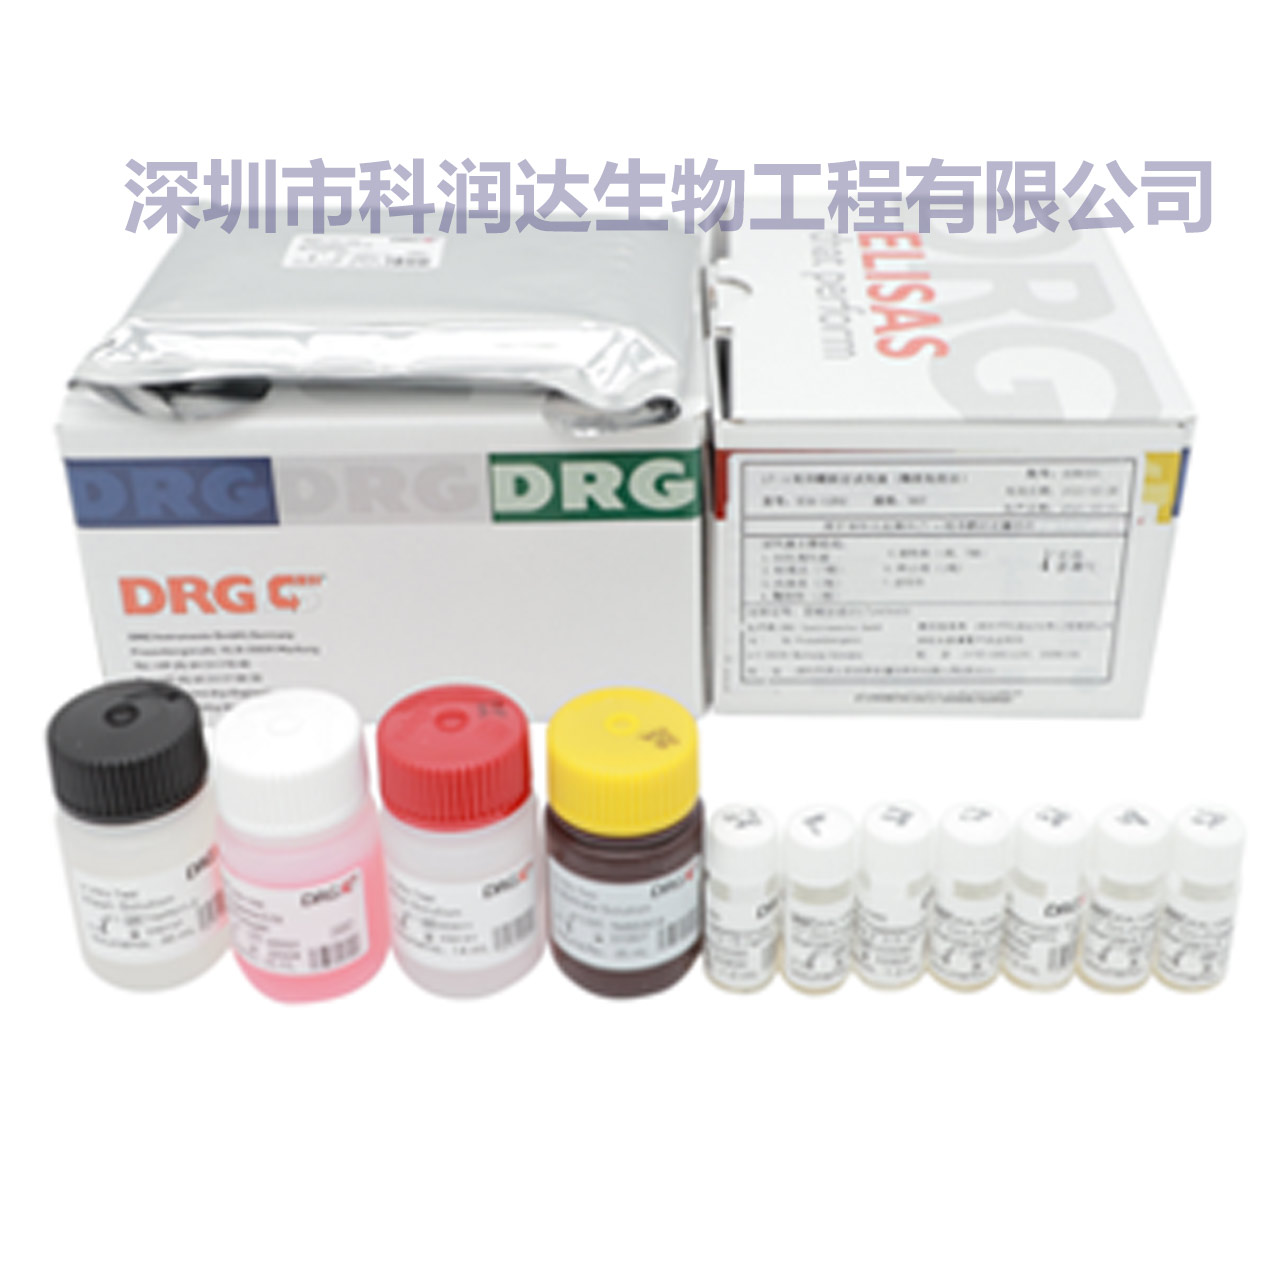 DRG试剂盒，带水印